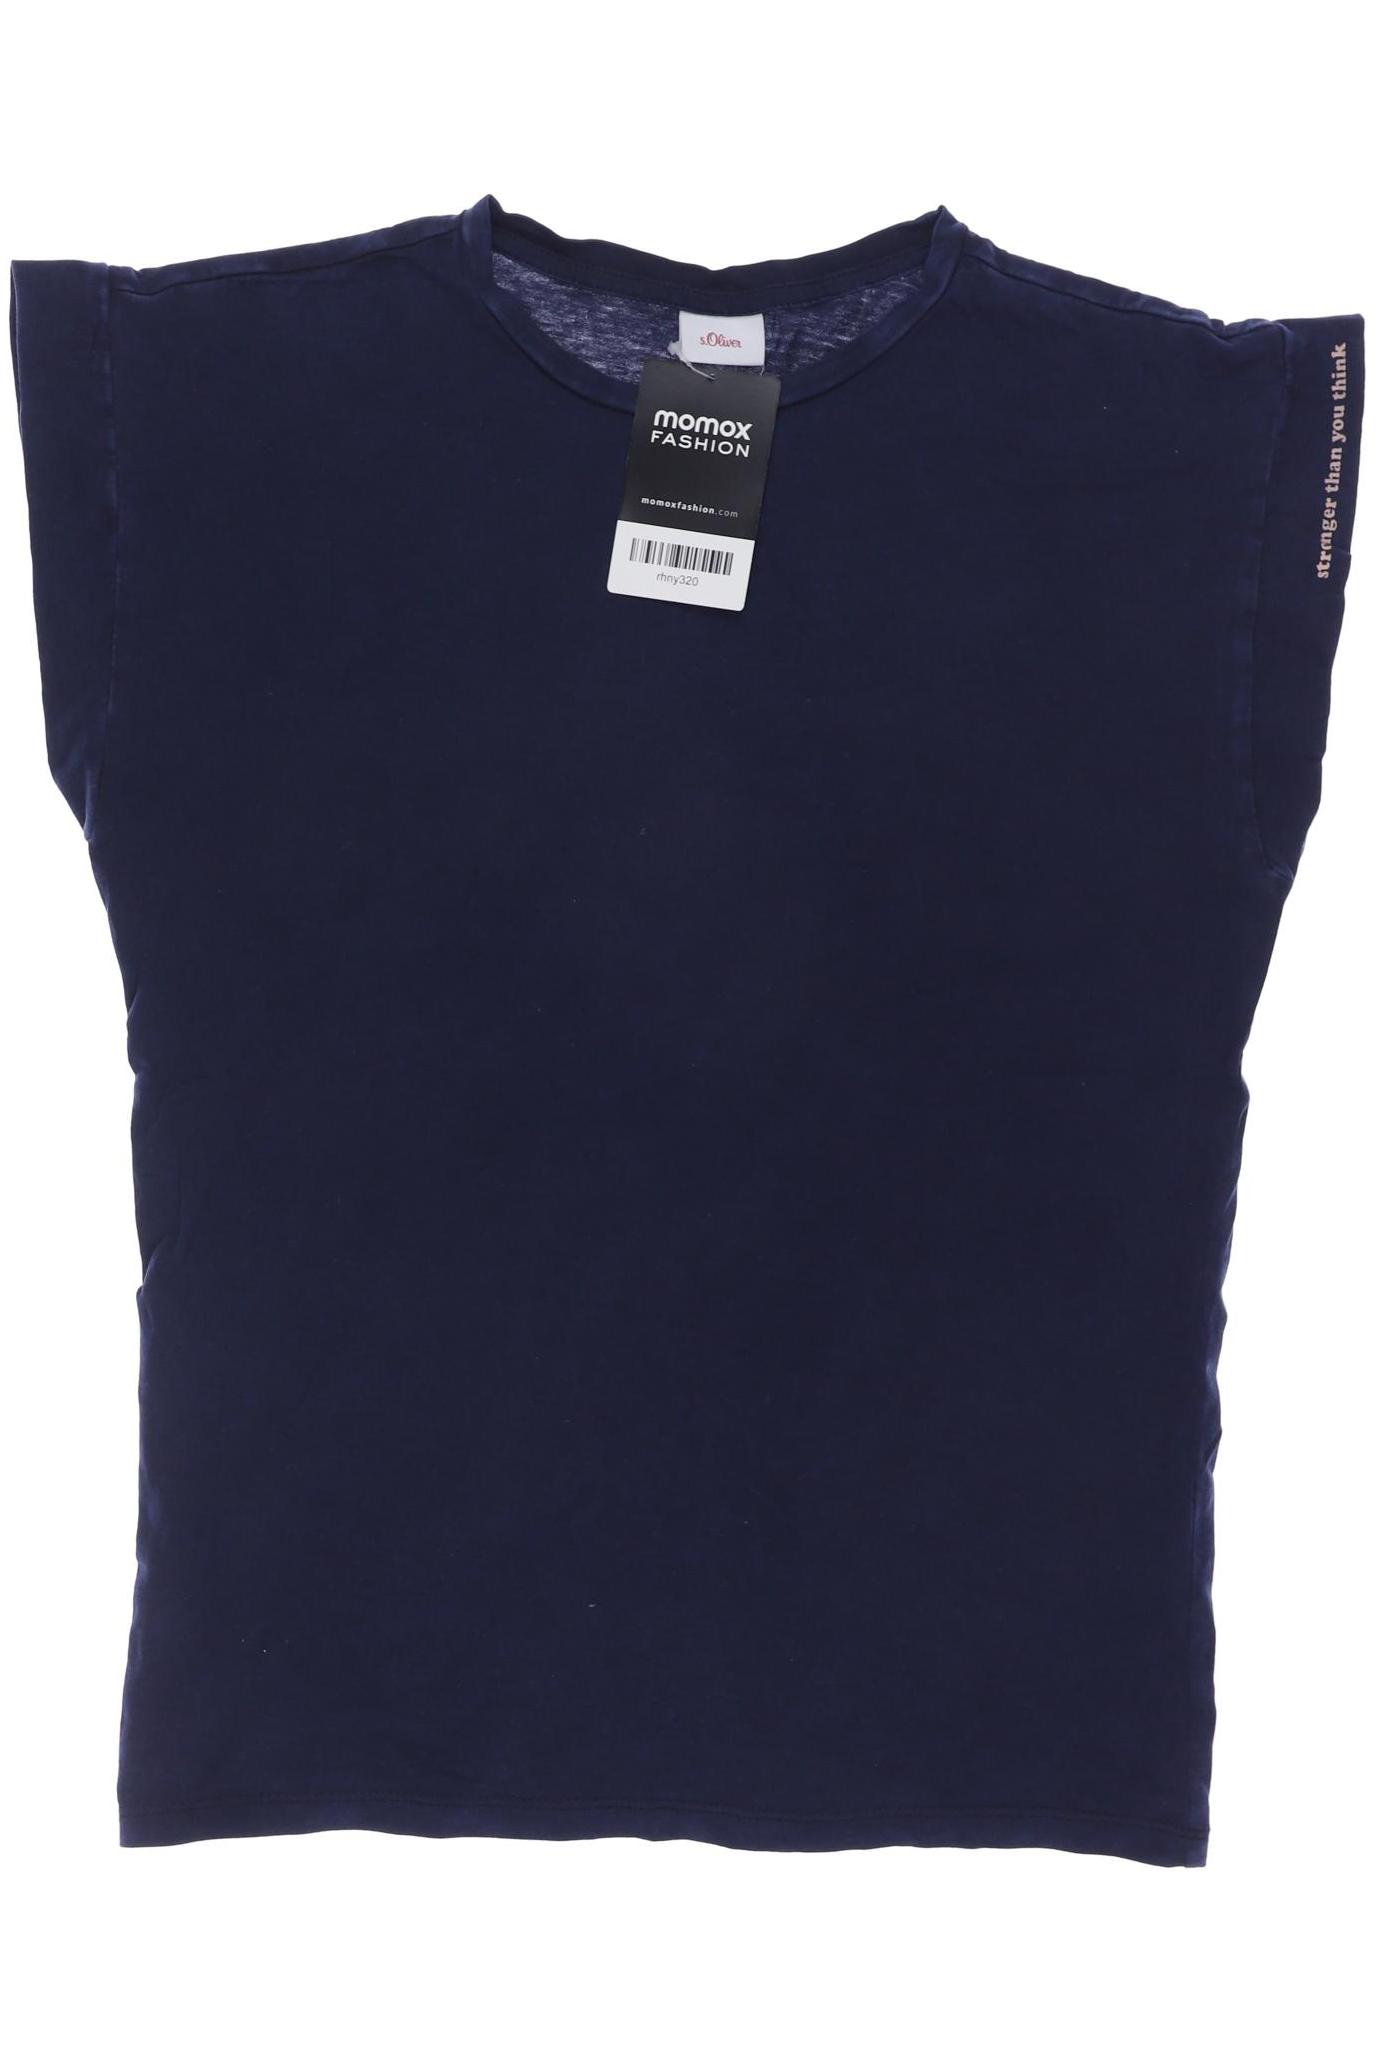 s.Oliver Damen T-Shirt, marineblau, Gr. 152 von s.Oliver